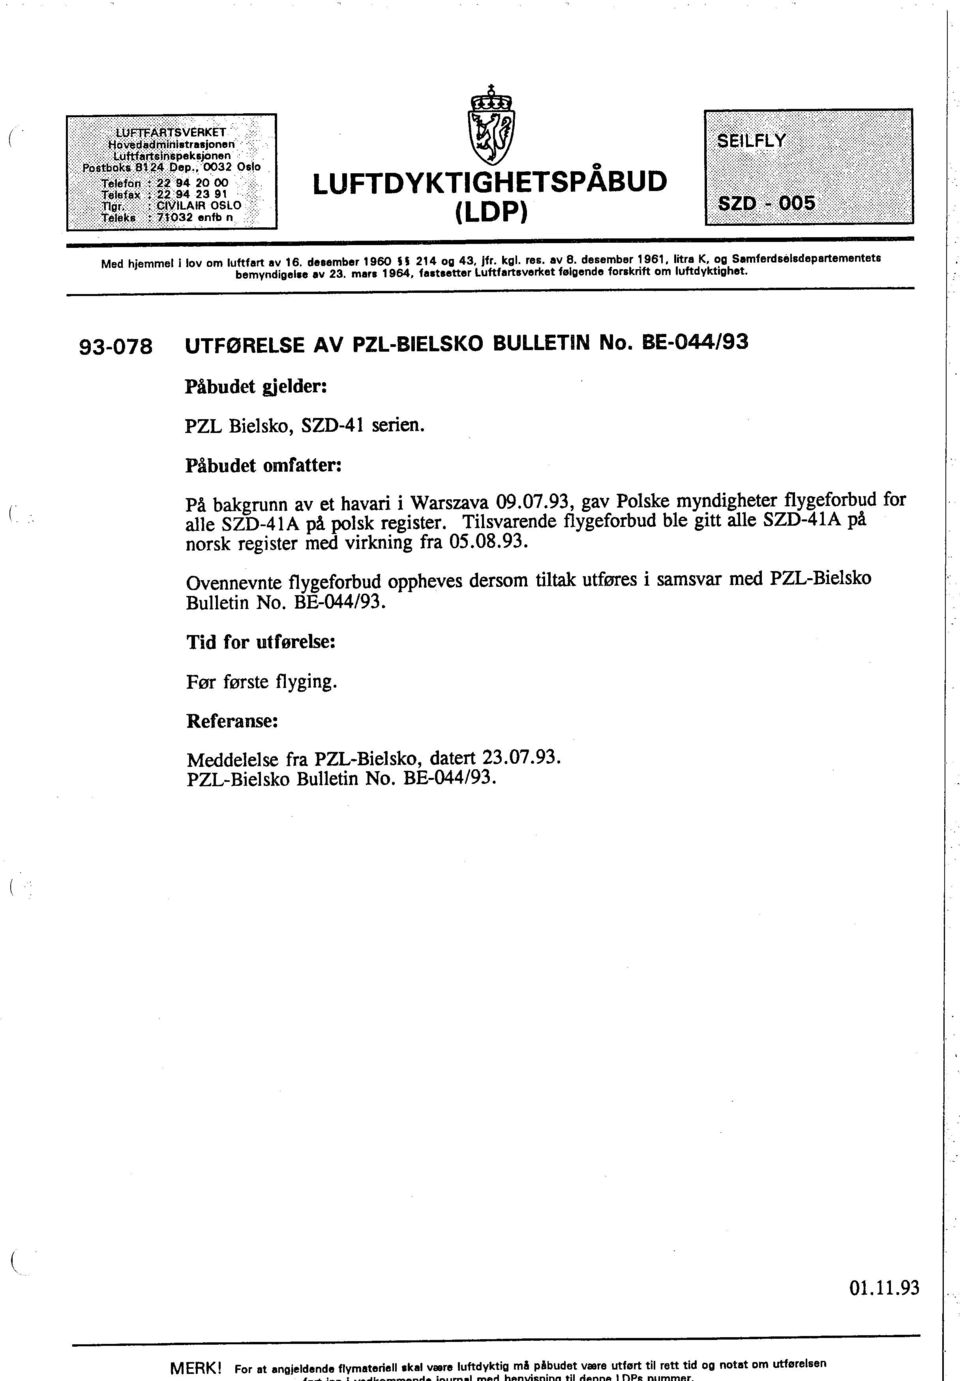 desamber 1960 U 214 og 43. jfr. kgl. res. av 8. desember 1961. litra K. og Samferdselsdepertementets bemyndigelse av 23. mars 1964. fastsetter Luftfartsverket følgende forskrift om luftdyktighet.